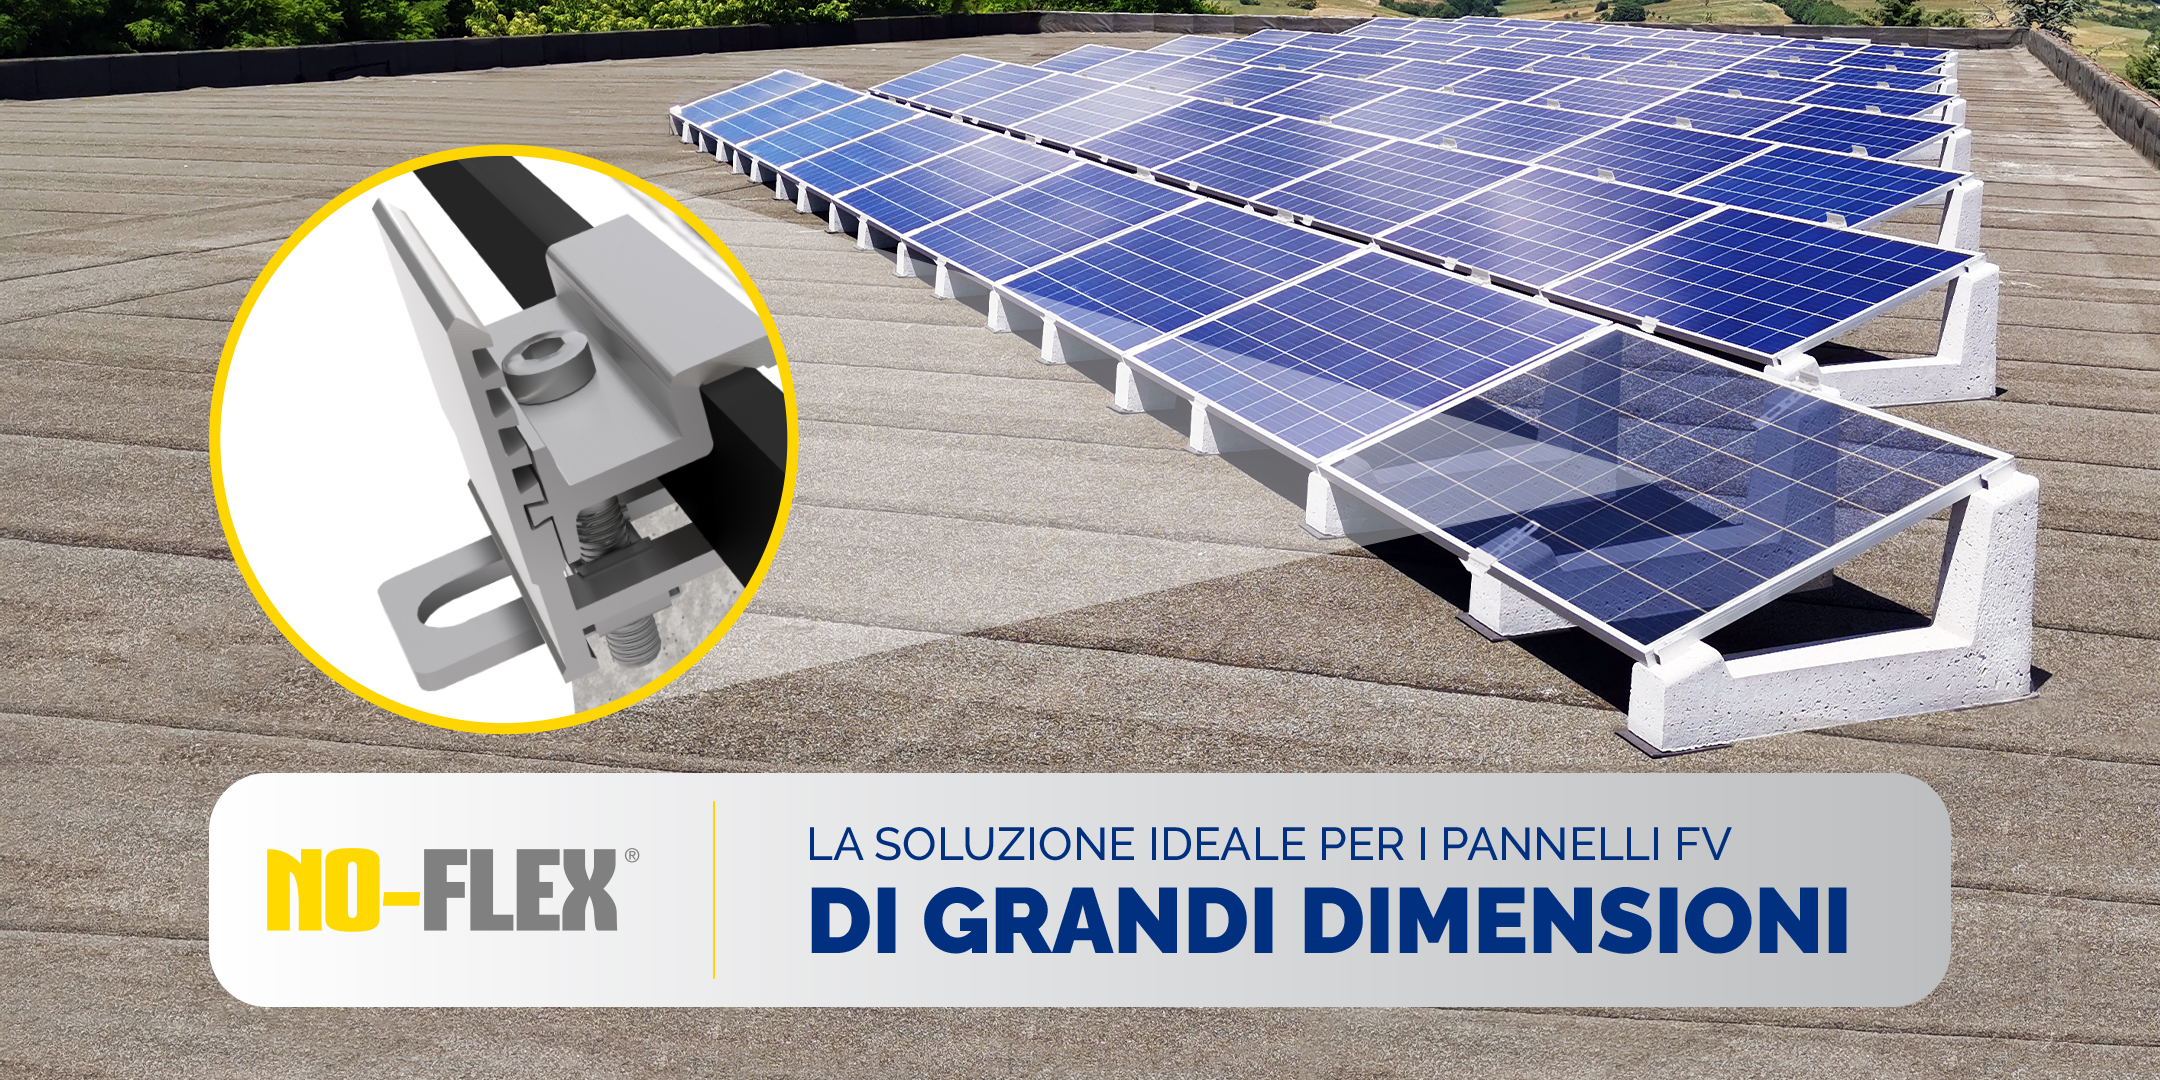 Sun Ballast presenta le soluzioni per il fotovoltaico con un evento a Monaco no flex 1